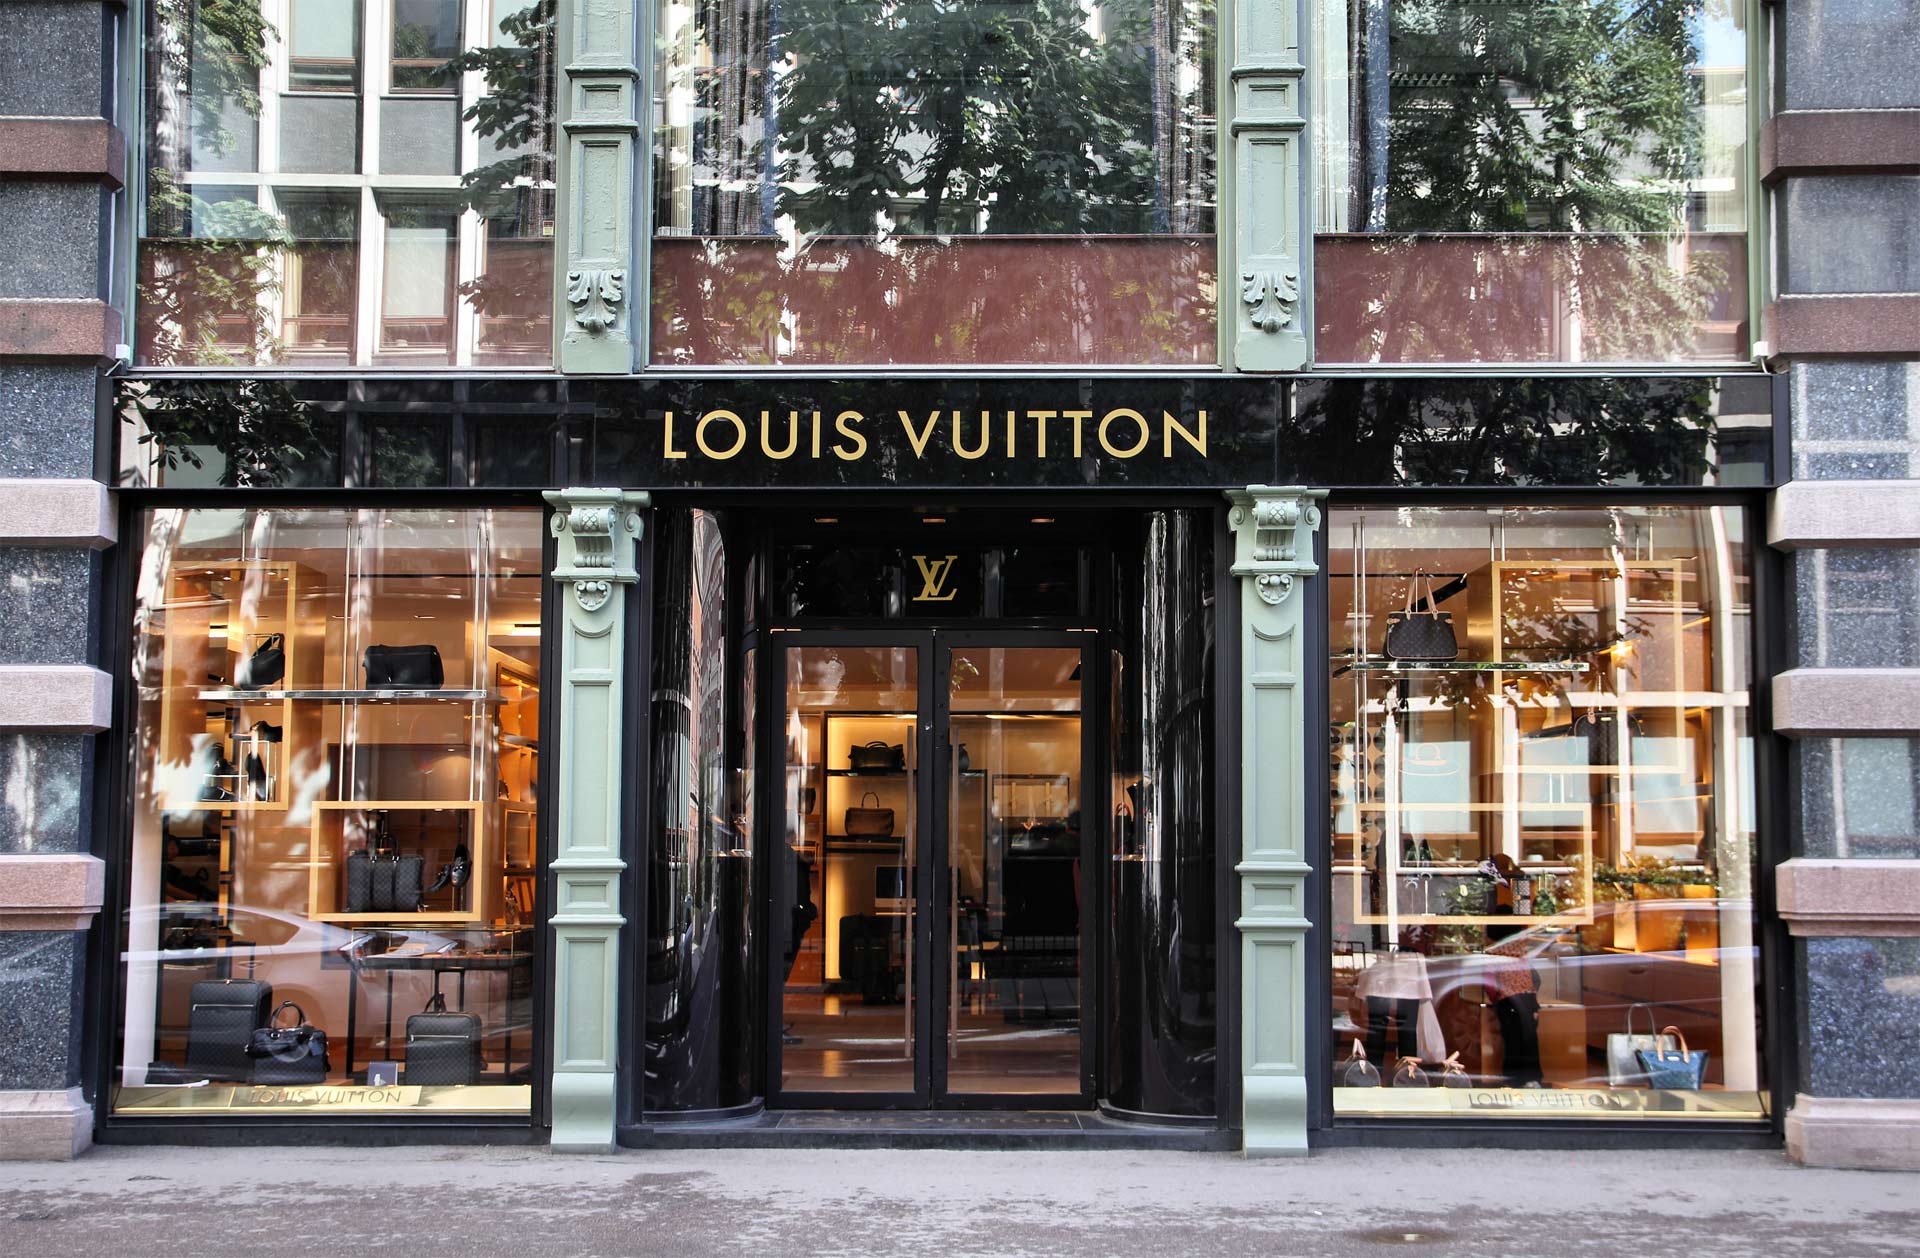 Esta empresa francesa de lujo, especializada en artículos de viaje se ha convertido en una de las más exclusivas del mundo